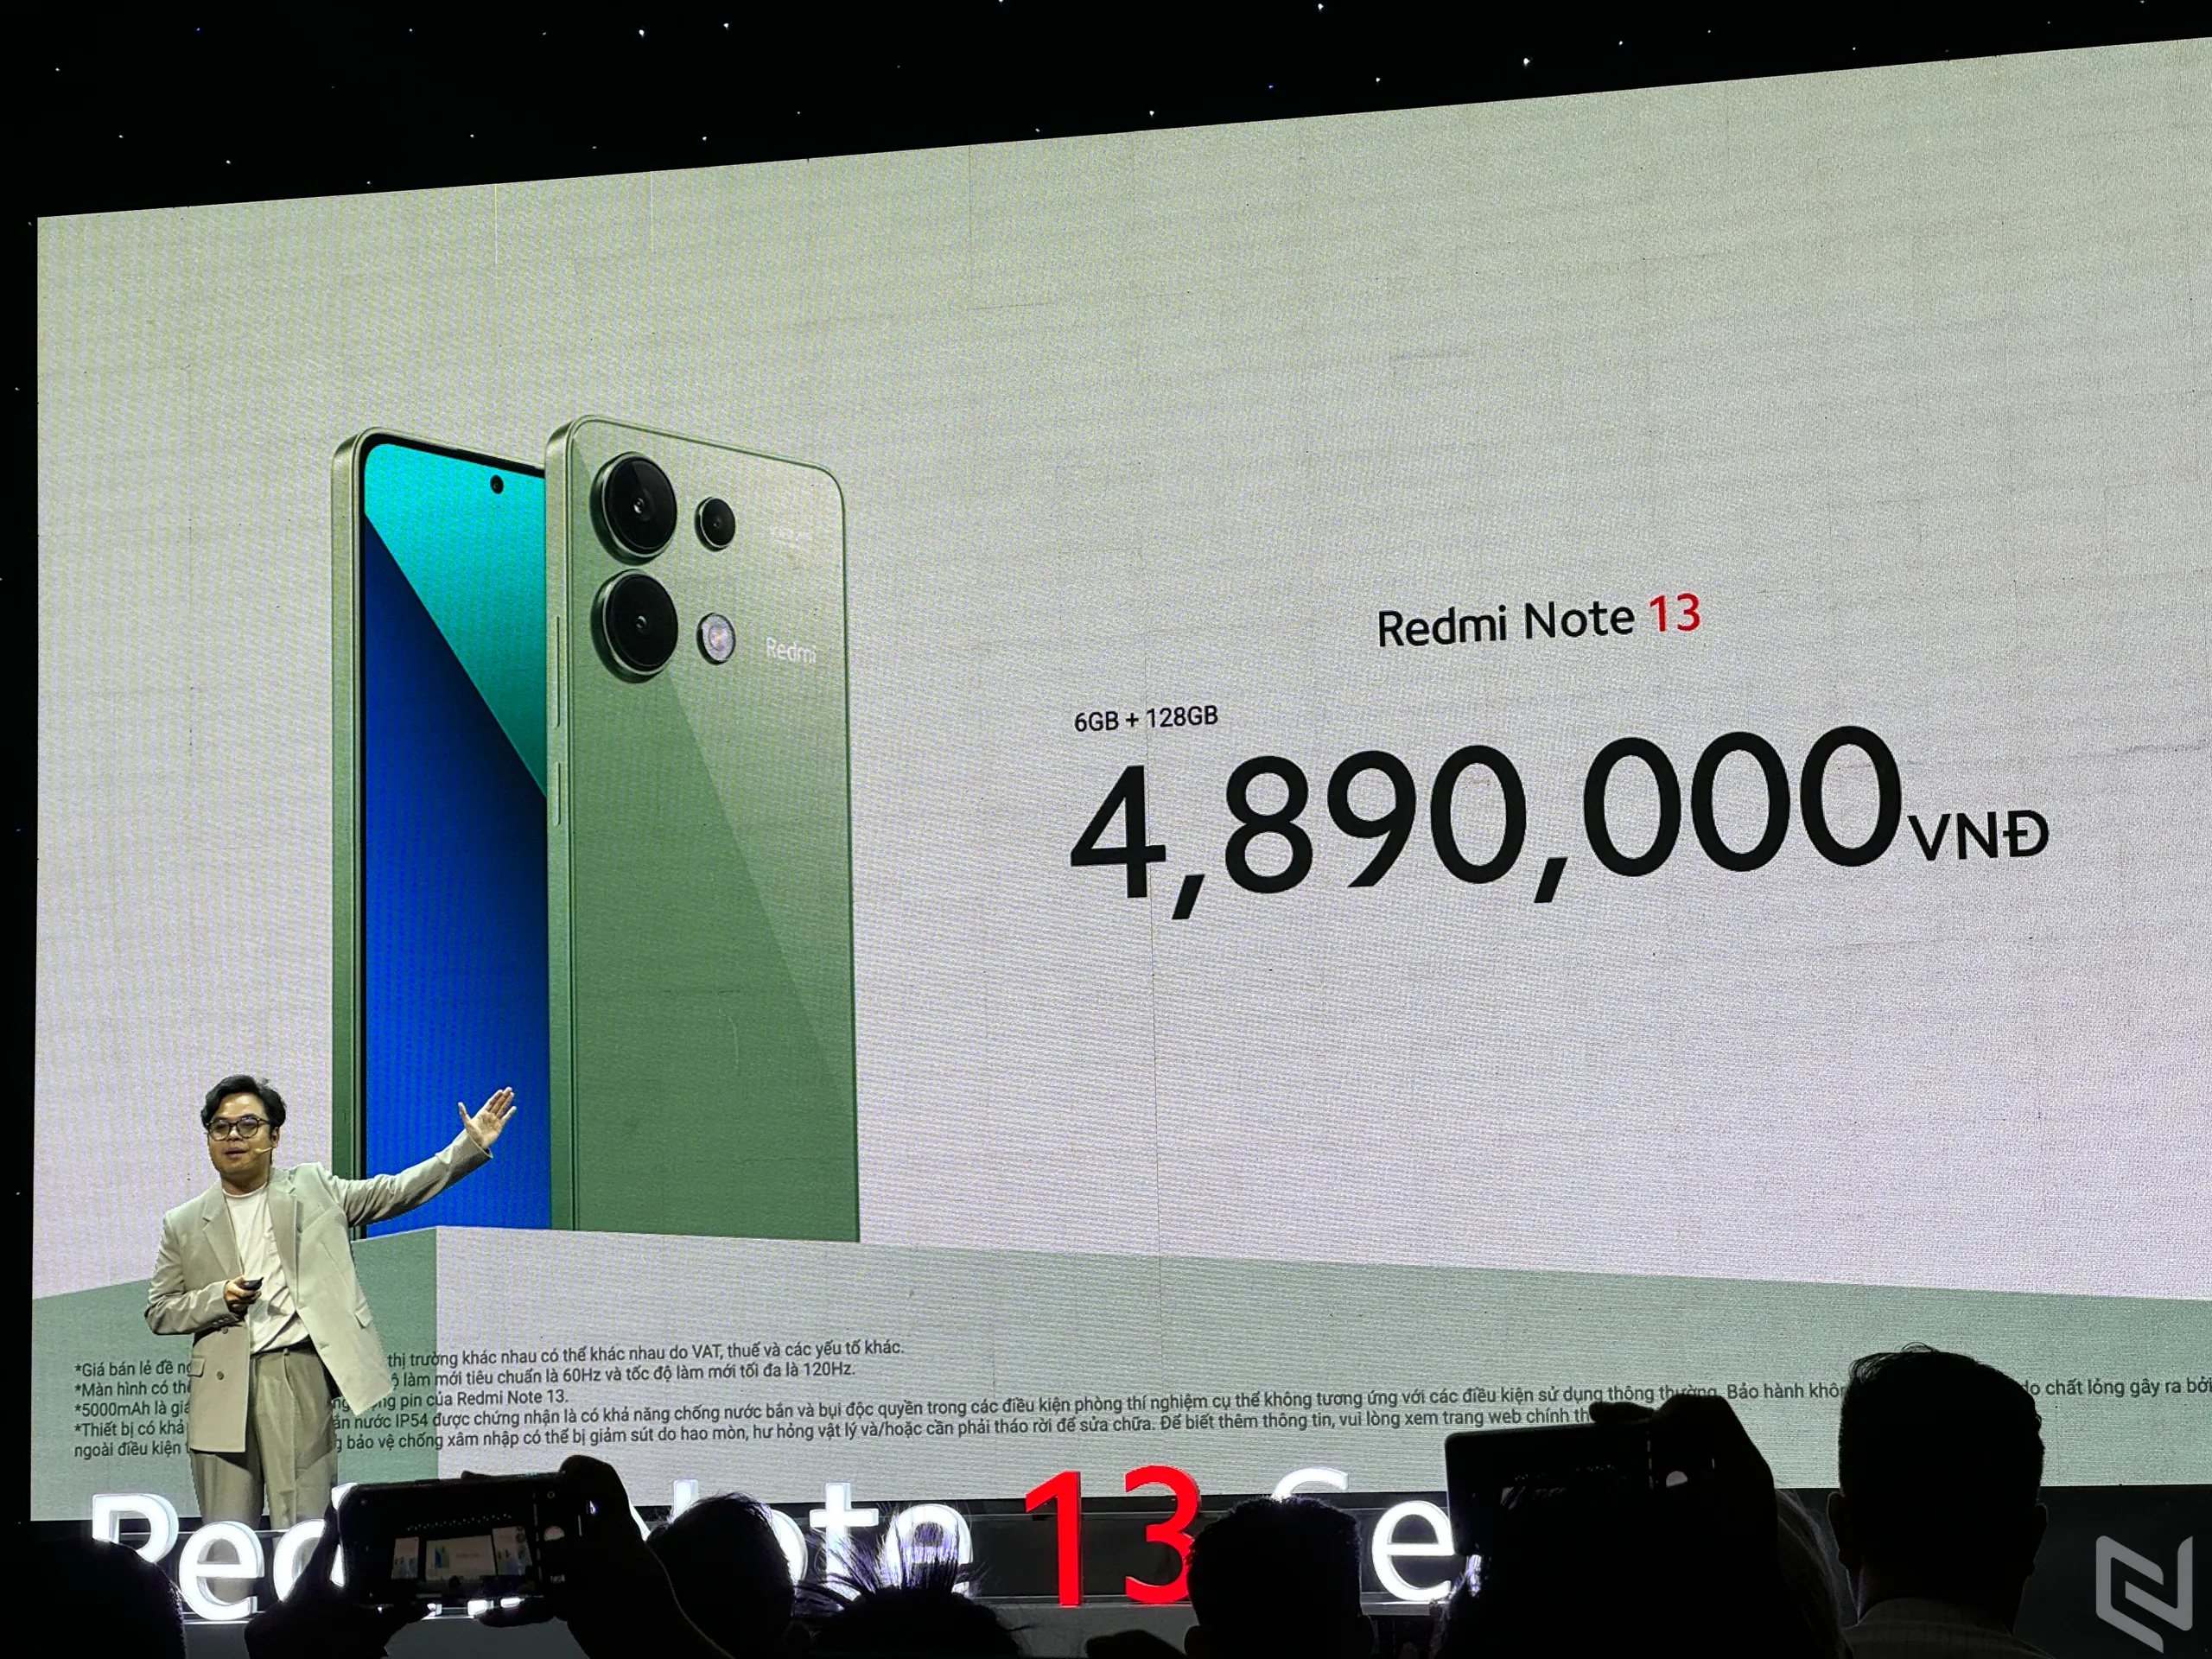 Redmi Note 13 Series chính thức ra mắt tại Việt Nam với giá từ 4.89 triệu đồng